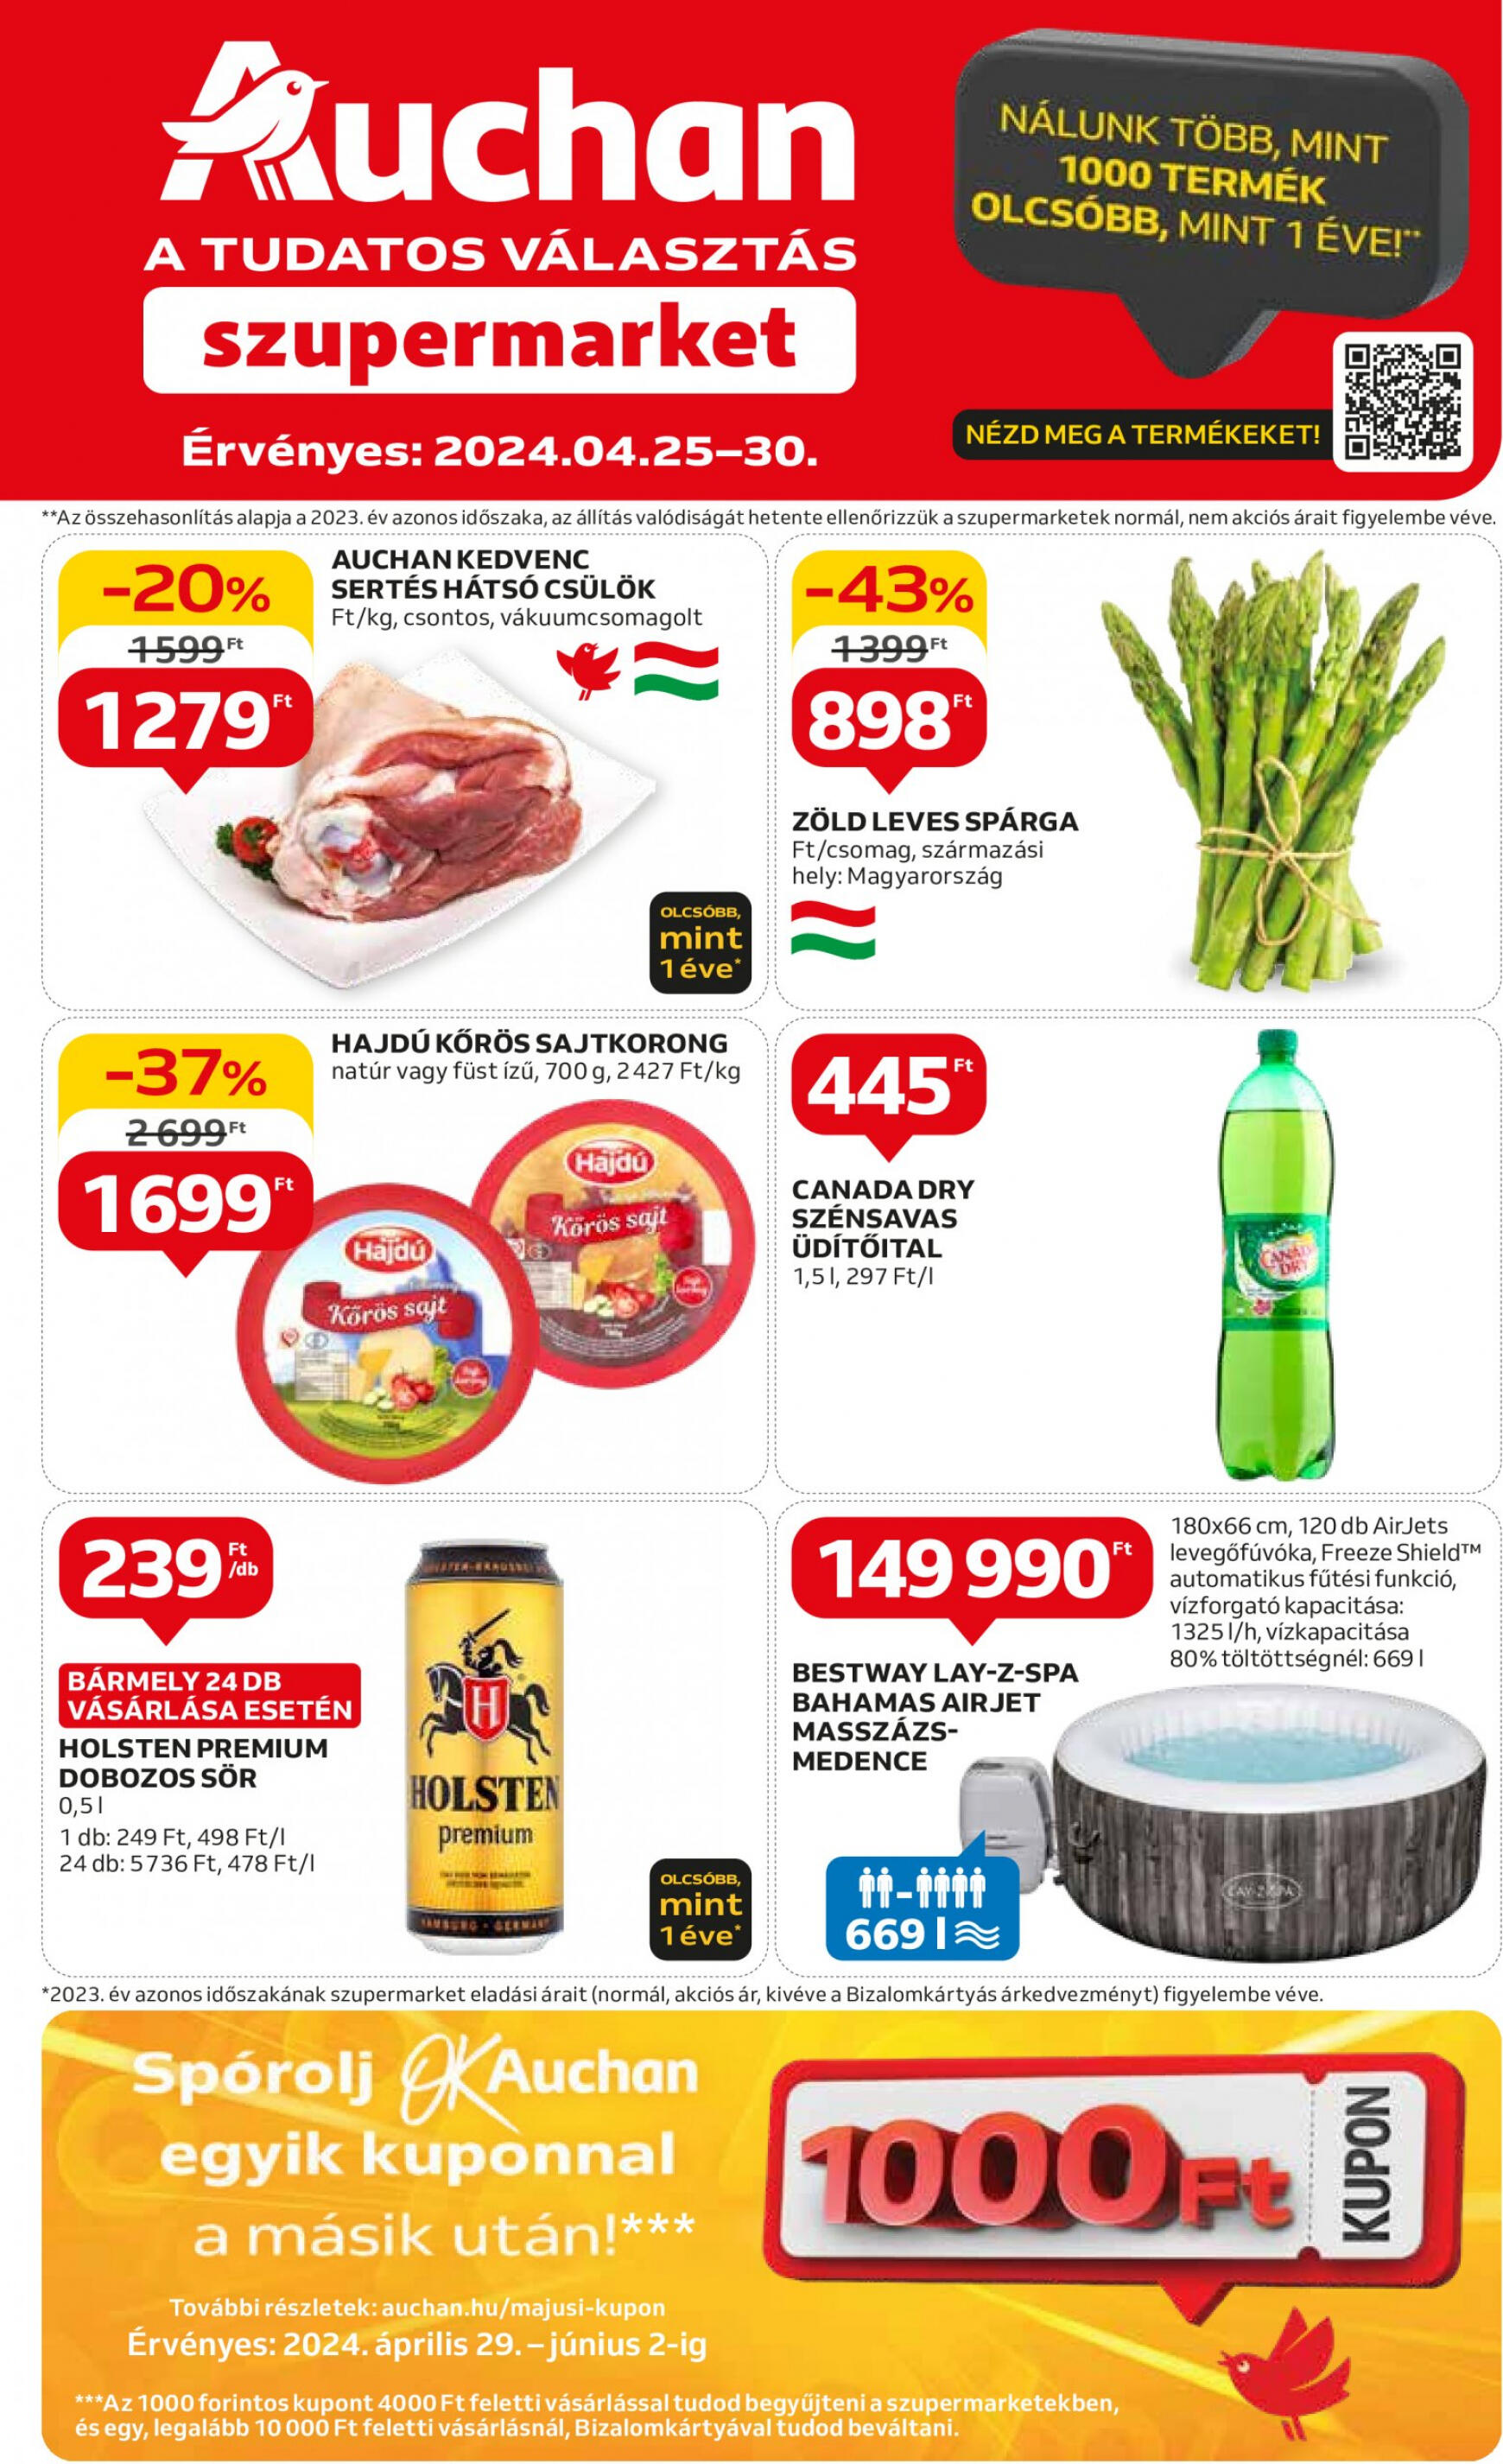 auchan - Aktuális újság Auchan szupermarket 04.25. - 05.30. - page: 1